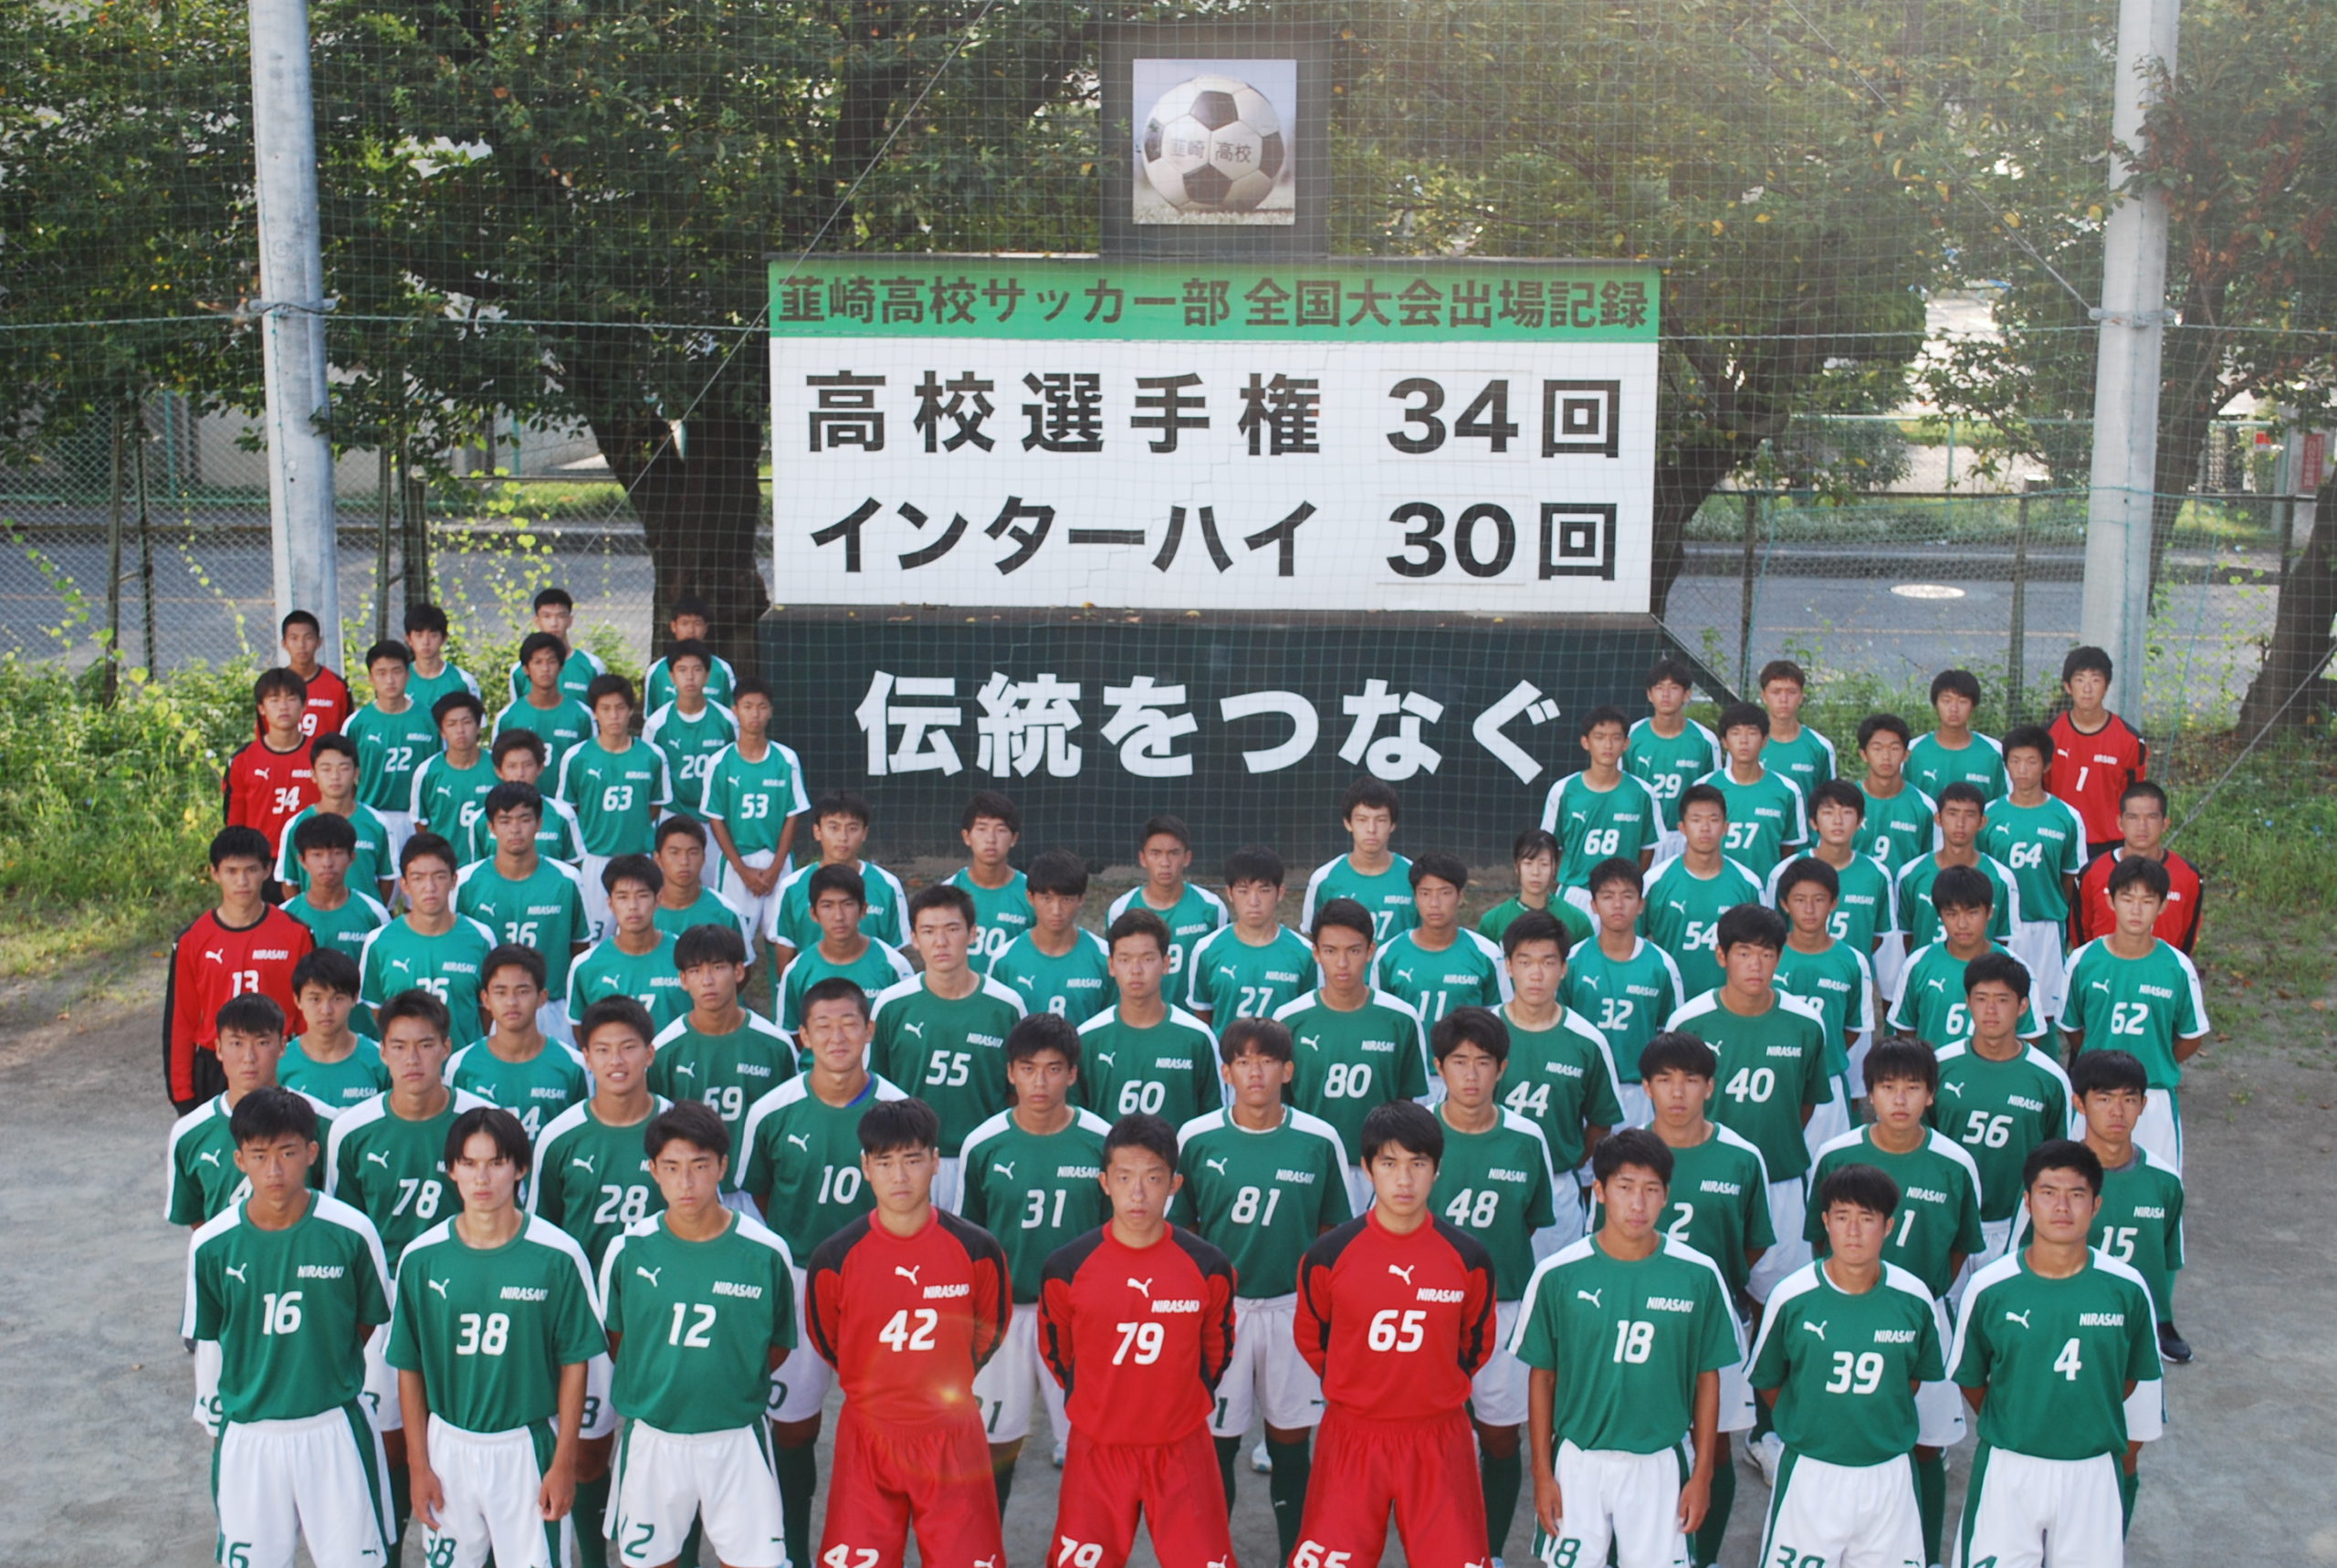 韮崎高校サッカー部公式ユニフォーム